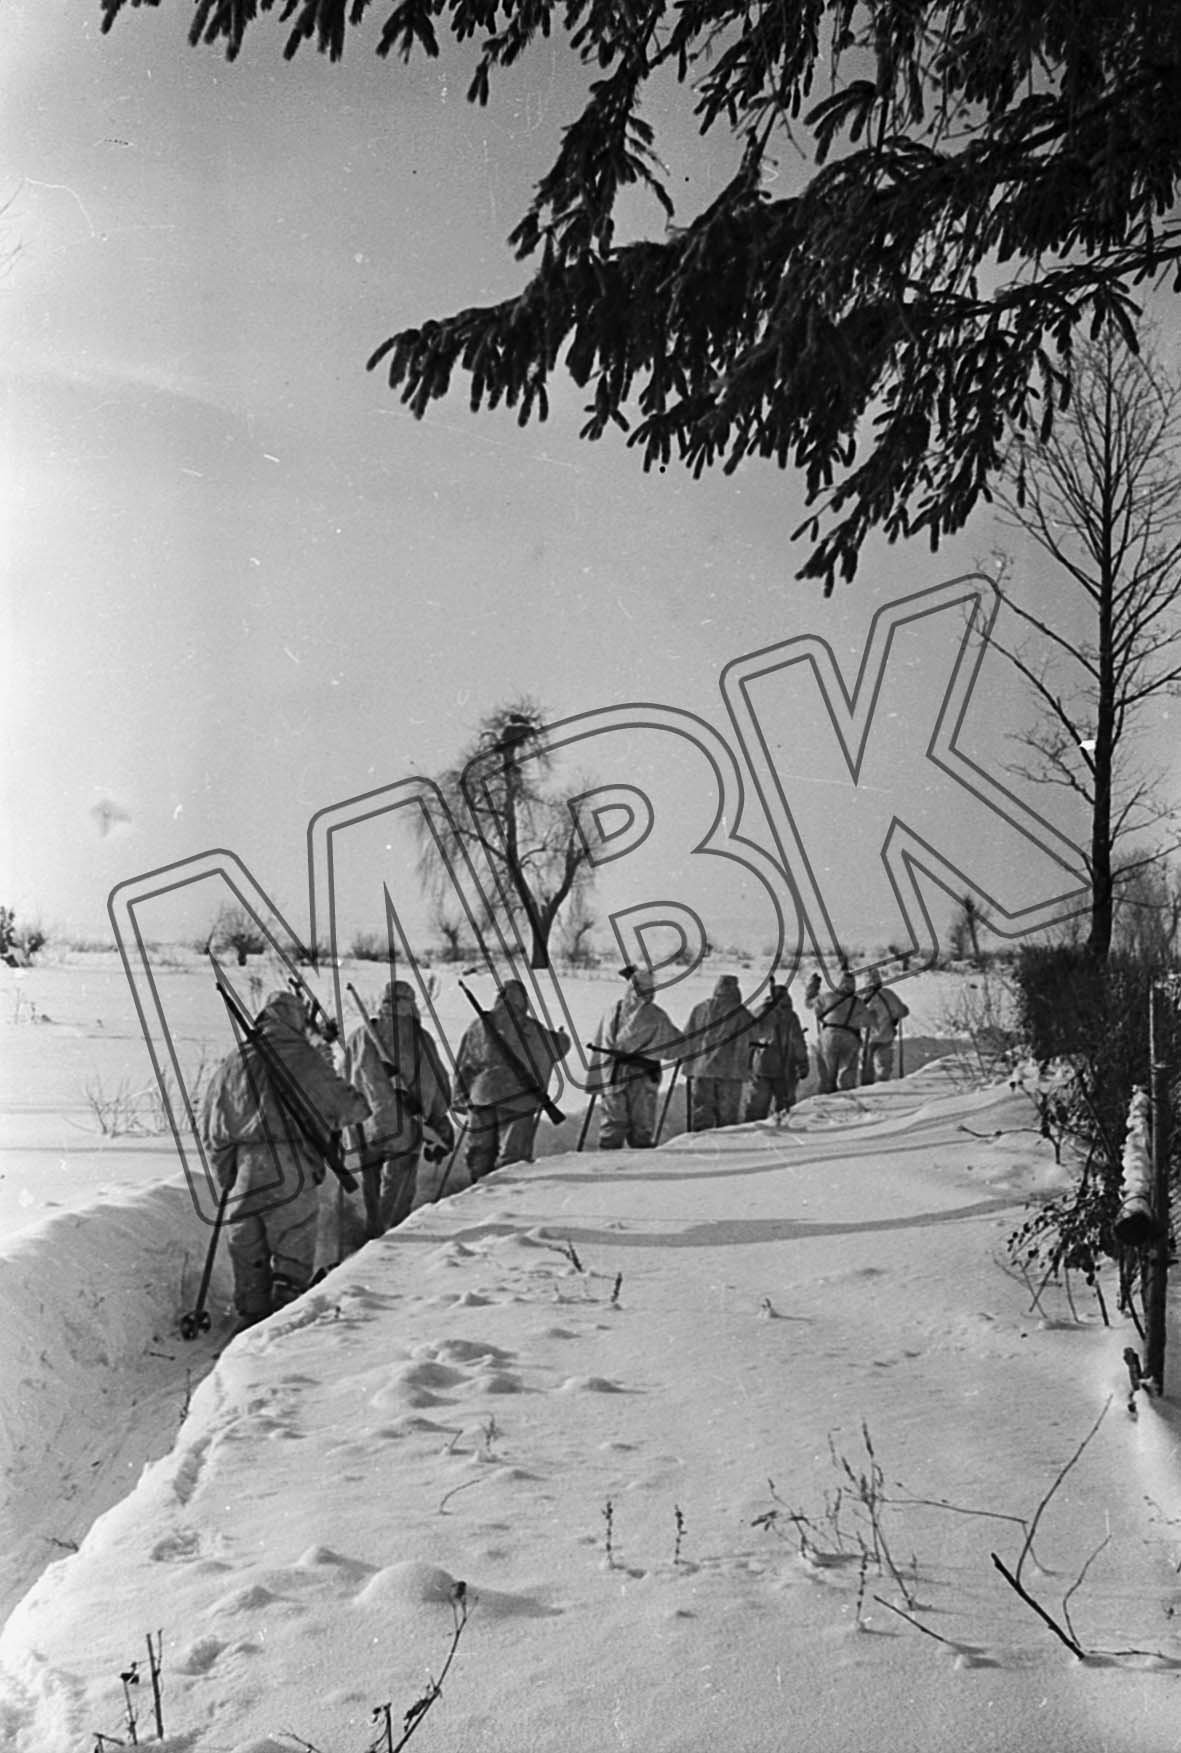 Fotografie: Sowjetische Aufklärer auf dem Marsch hinter die feindlichen Linien, Ort unbekannt, vermutlich 1942 (Museum Berlin-Karlshorst RR-P)